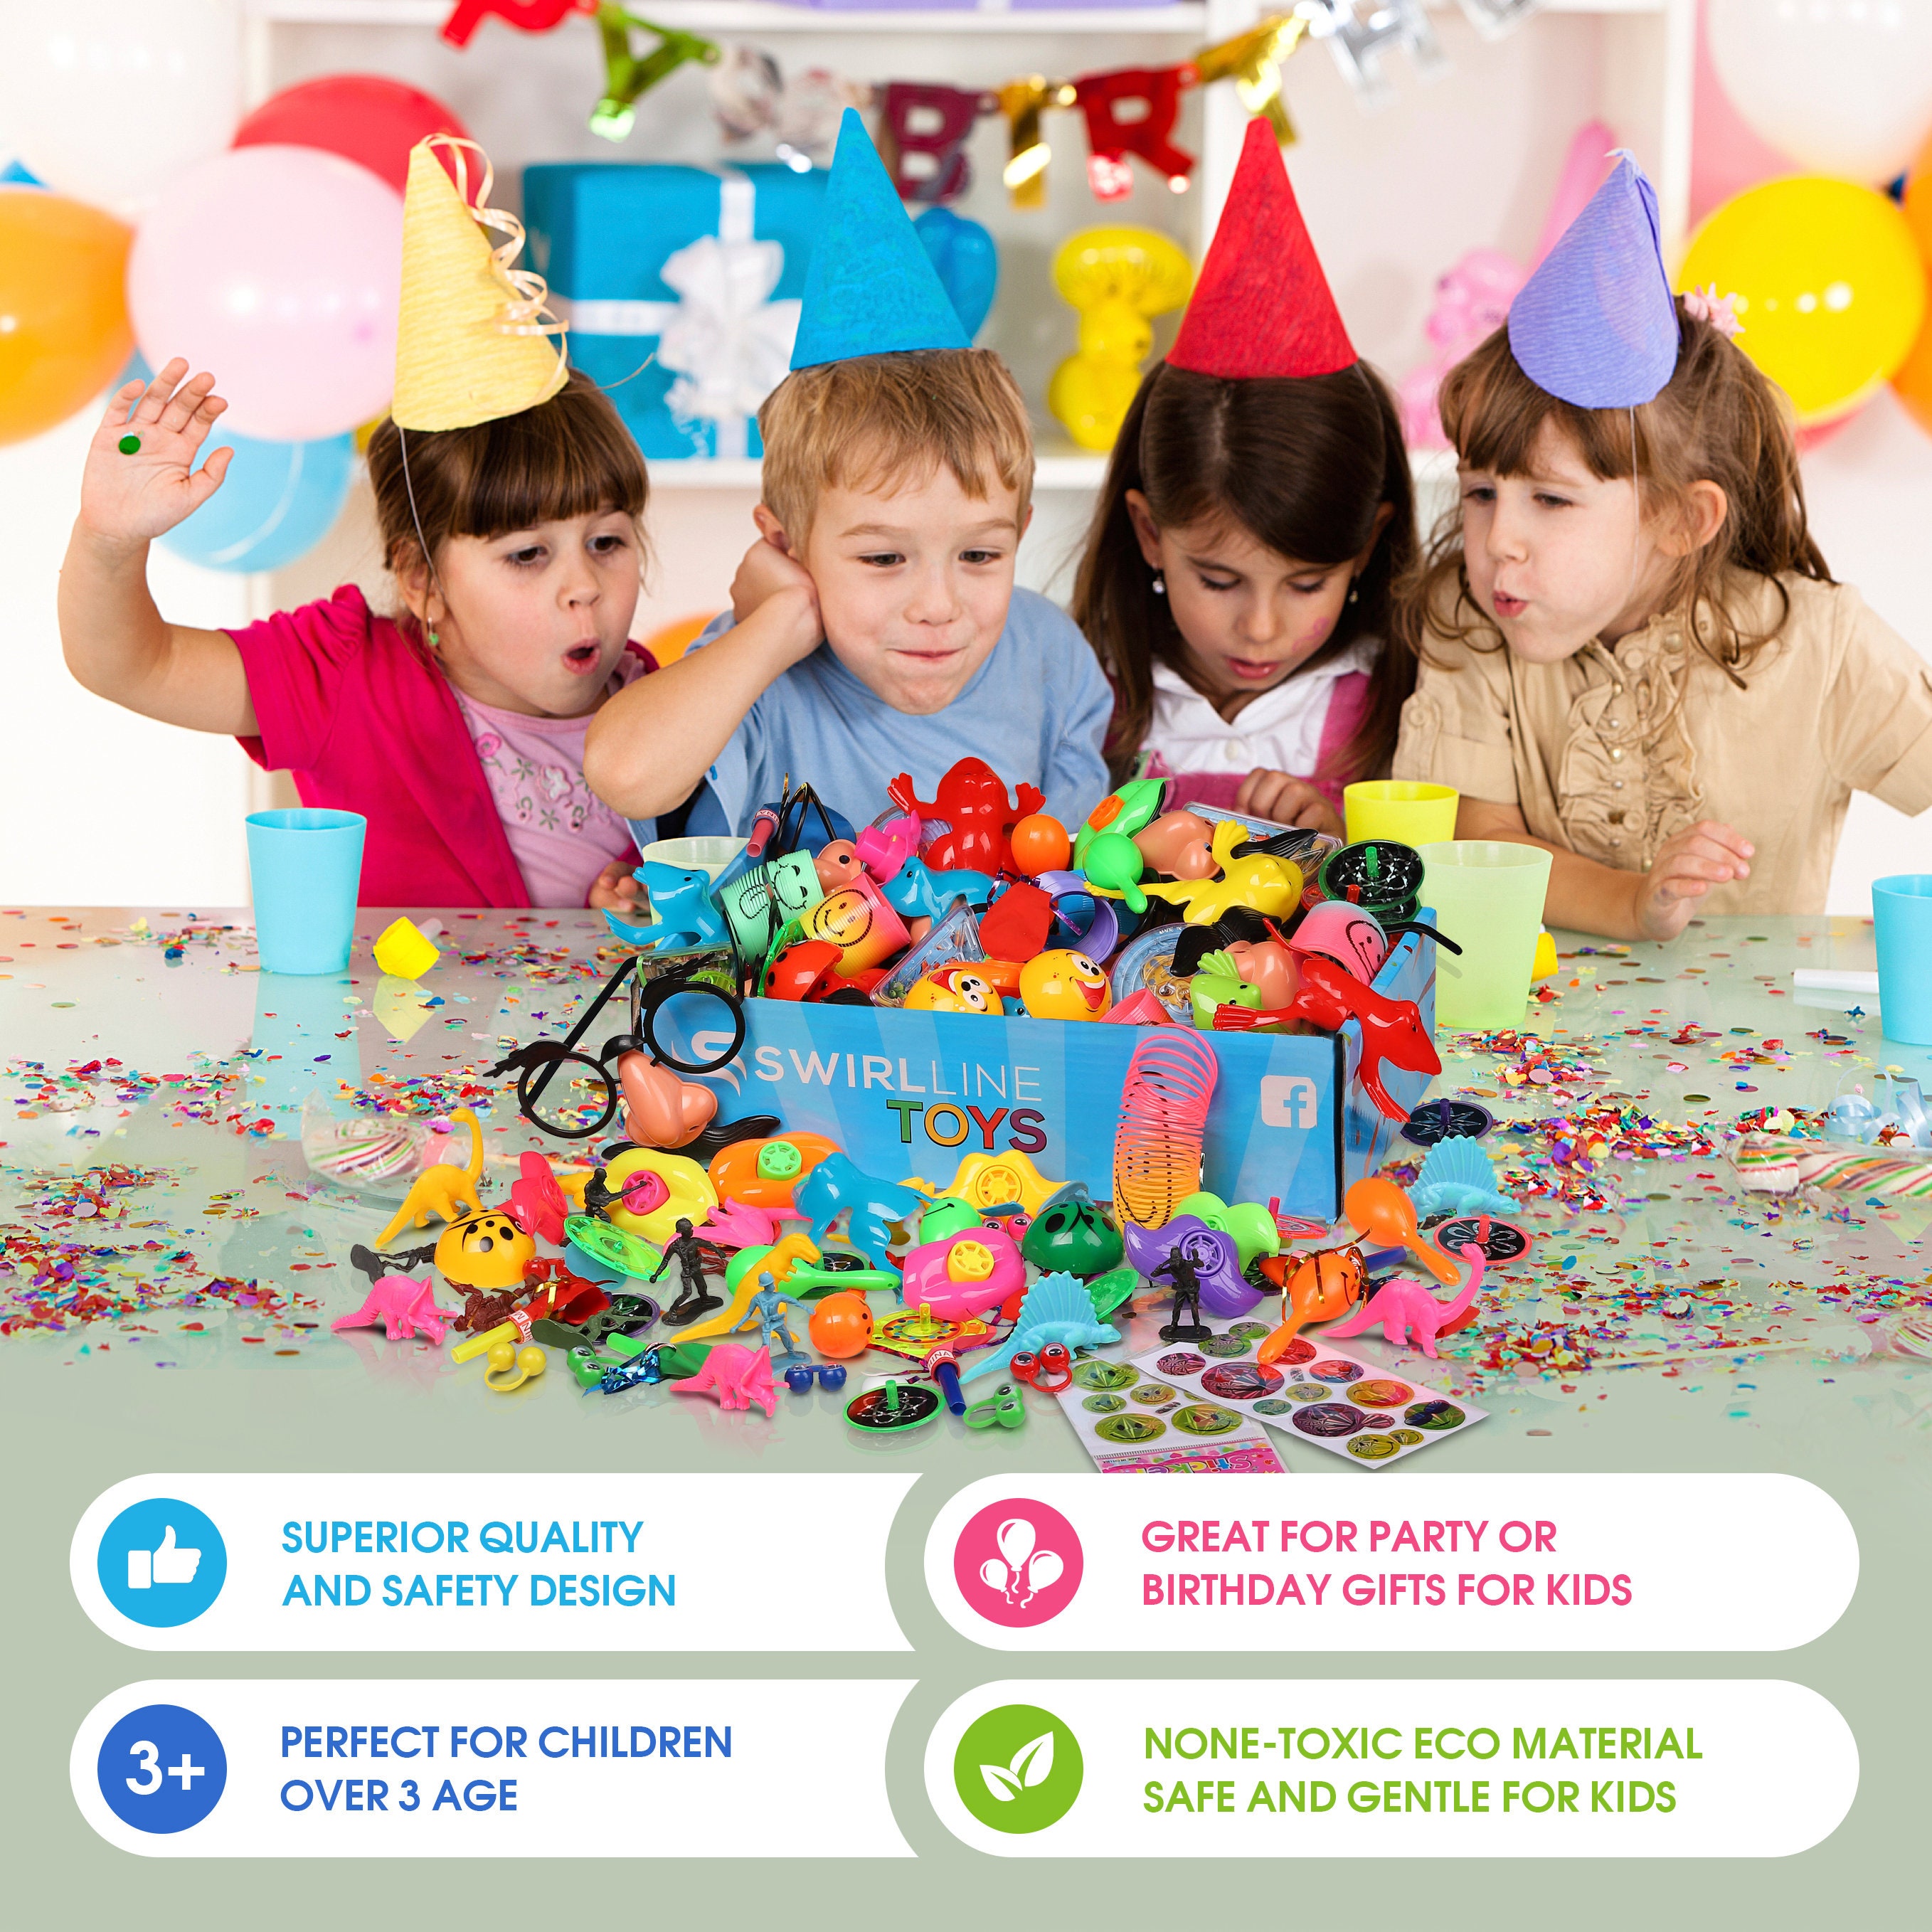 54 piezas de recuerdos de fiesta para niños de 4 a 8 años, juguetes de  regalo de cumpleaños, rellenos de piñata, juguetes de caja del tesoro,  premios